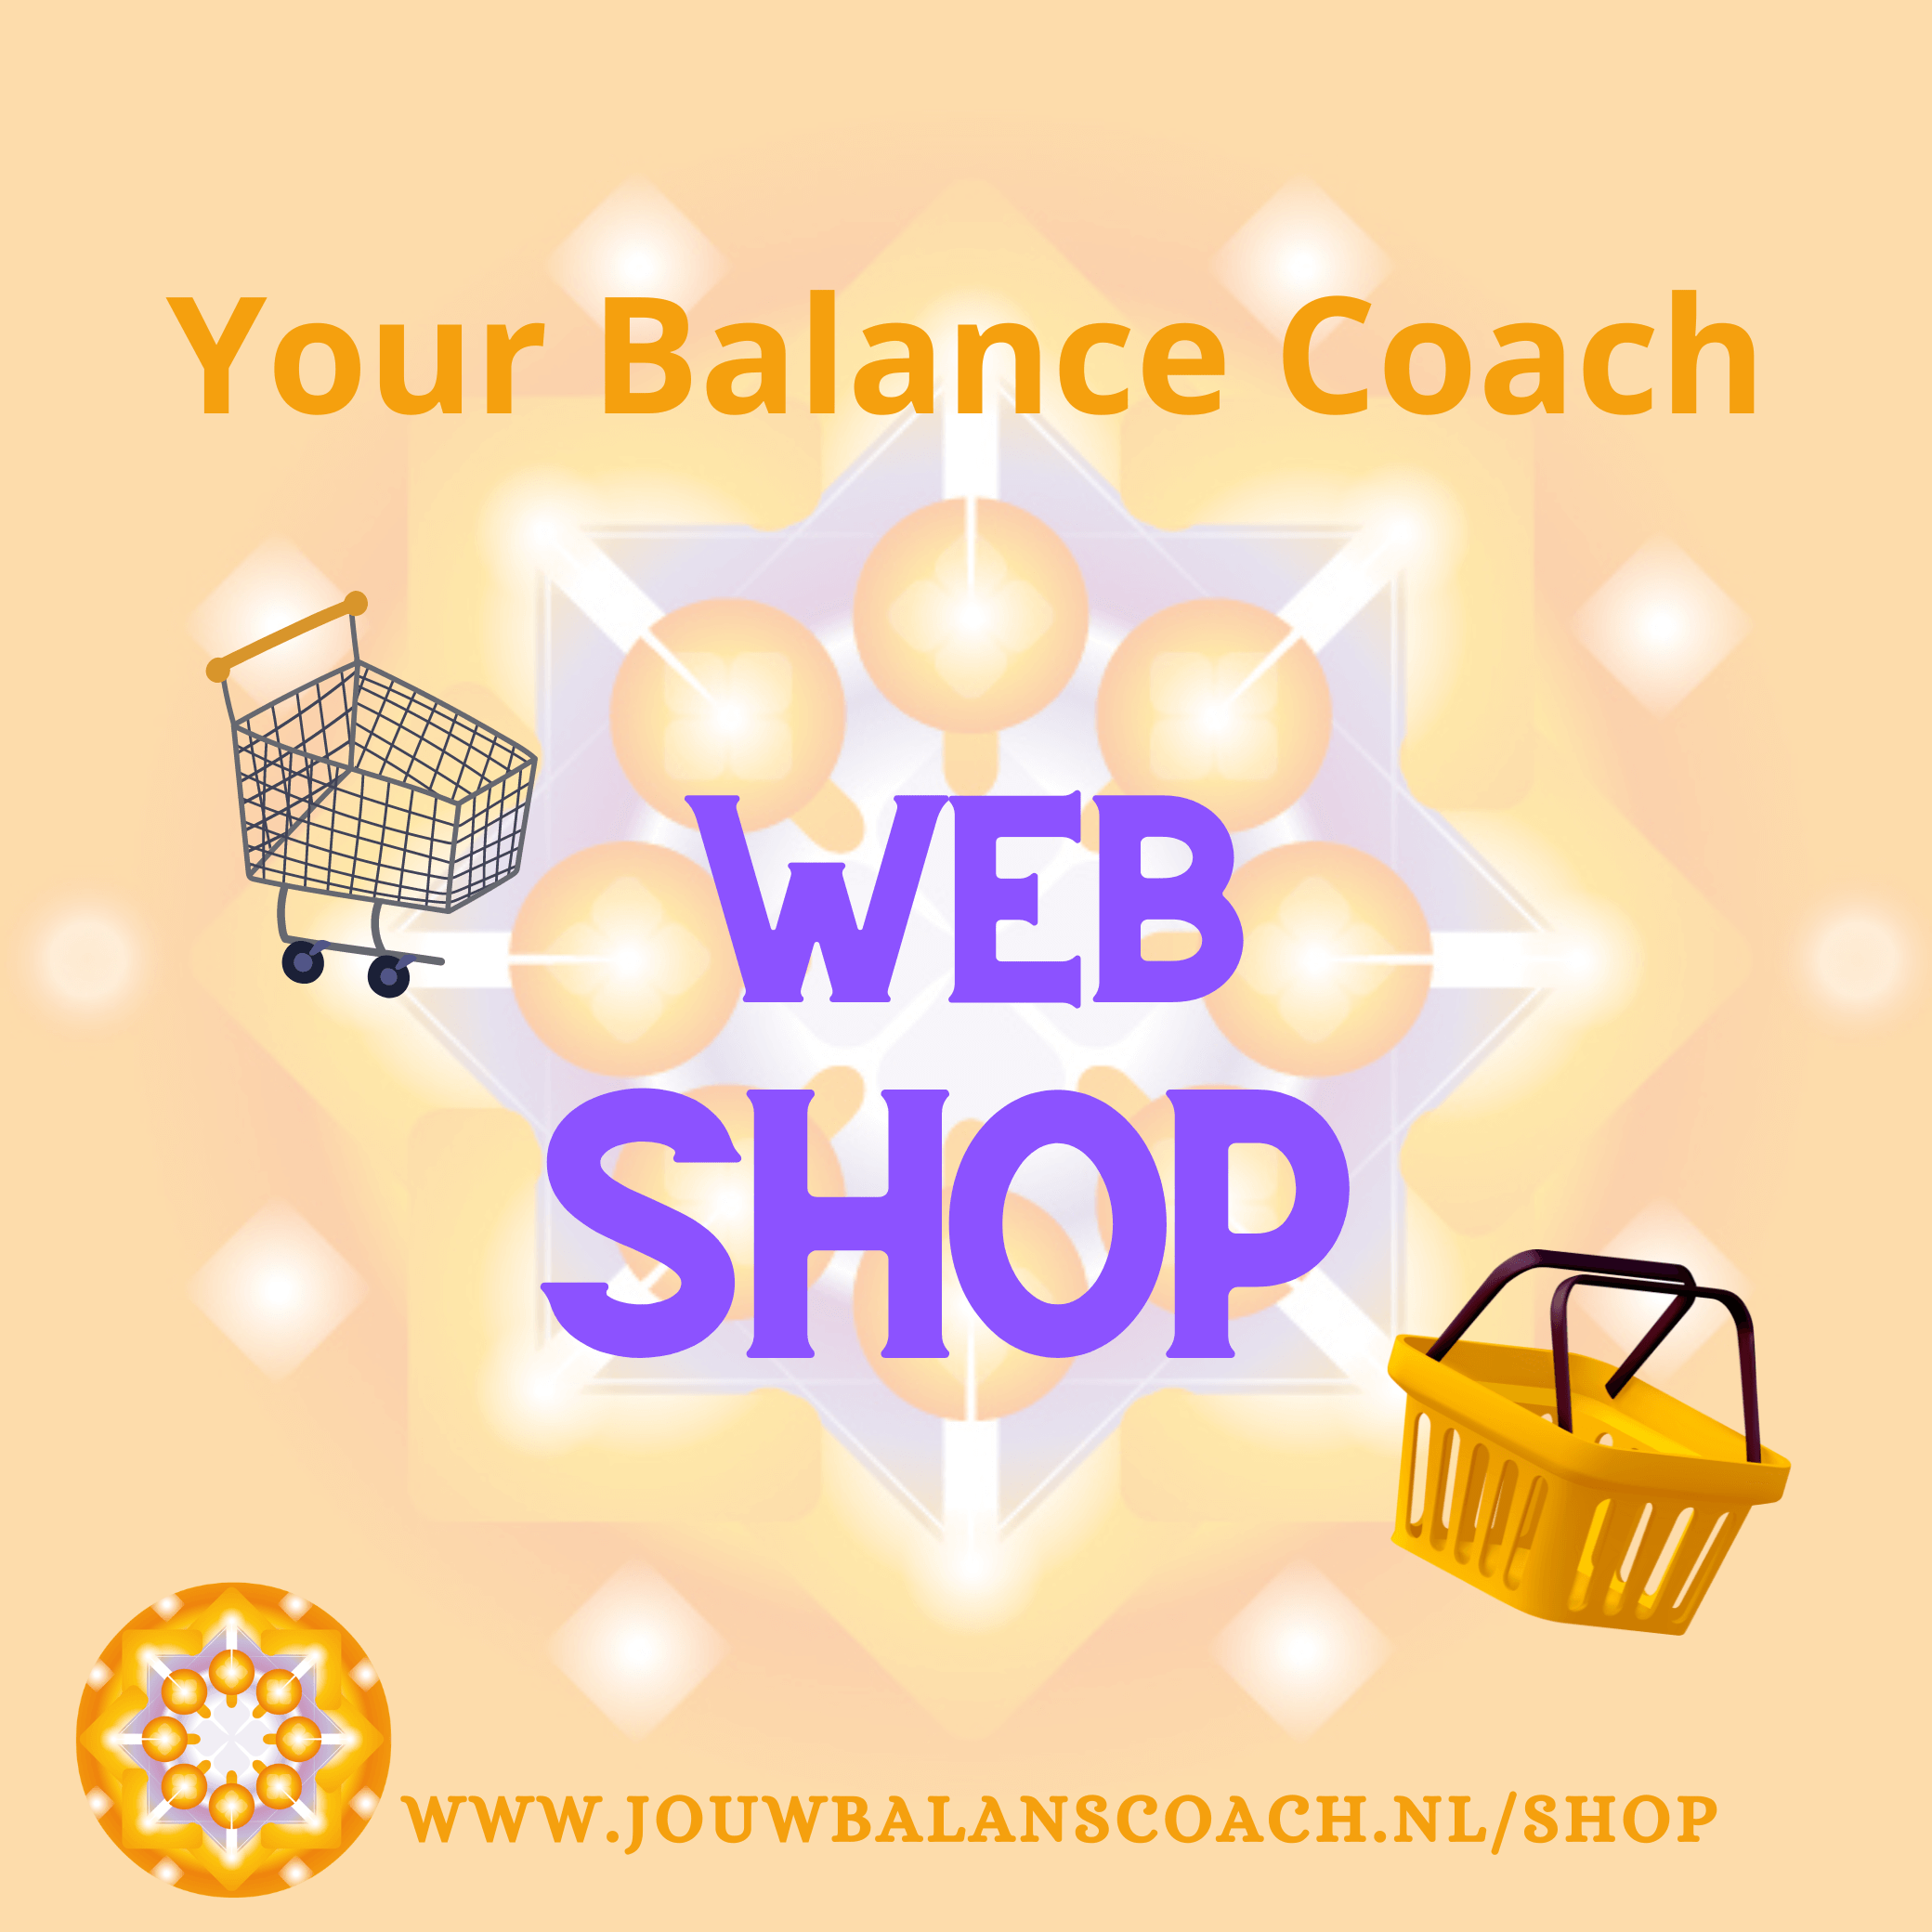 Your Balance Coach - Web-Shop